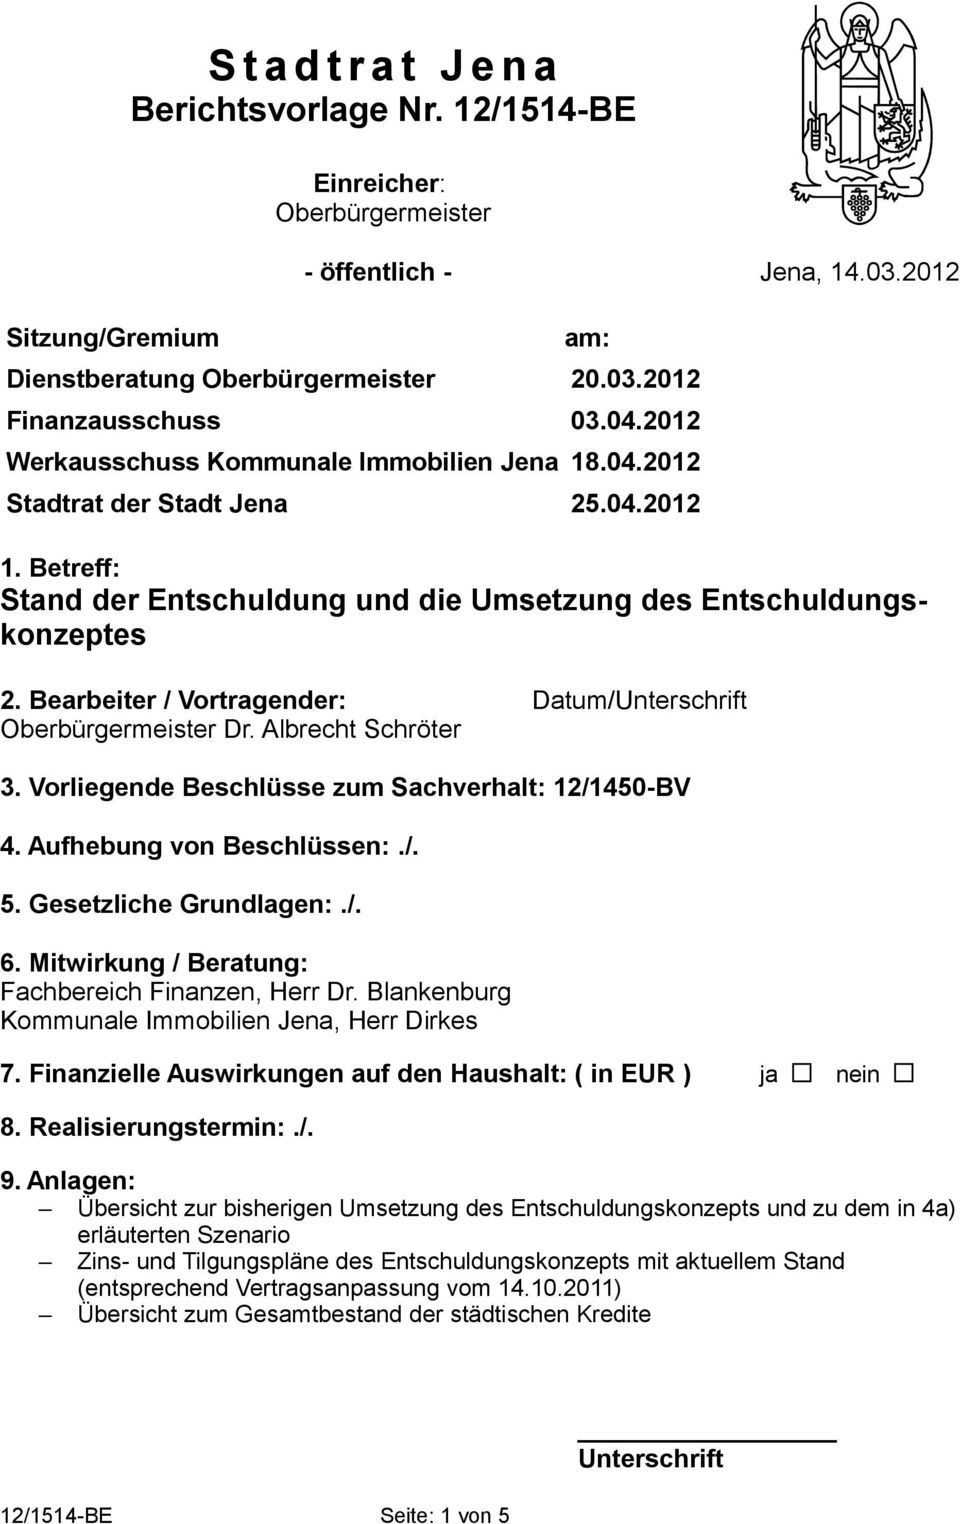 Bearbeiter / Vortragender: Datum/Unterschrift Oberbürgermeister Dr. Albrecht Schröter 3. Vorliegende Beschlüsse zum Sachverhalt: 12/1450-BV 4. Aufhebung von Beschlüssen:./. 5. Gesetzliche Grundlagen:.